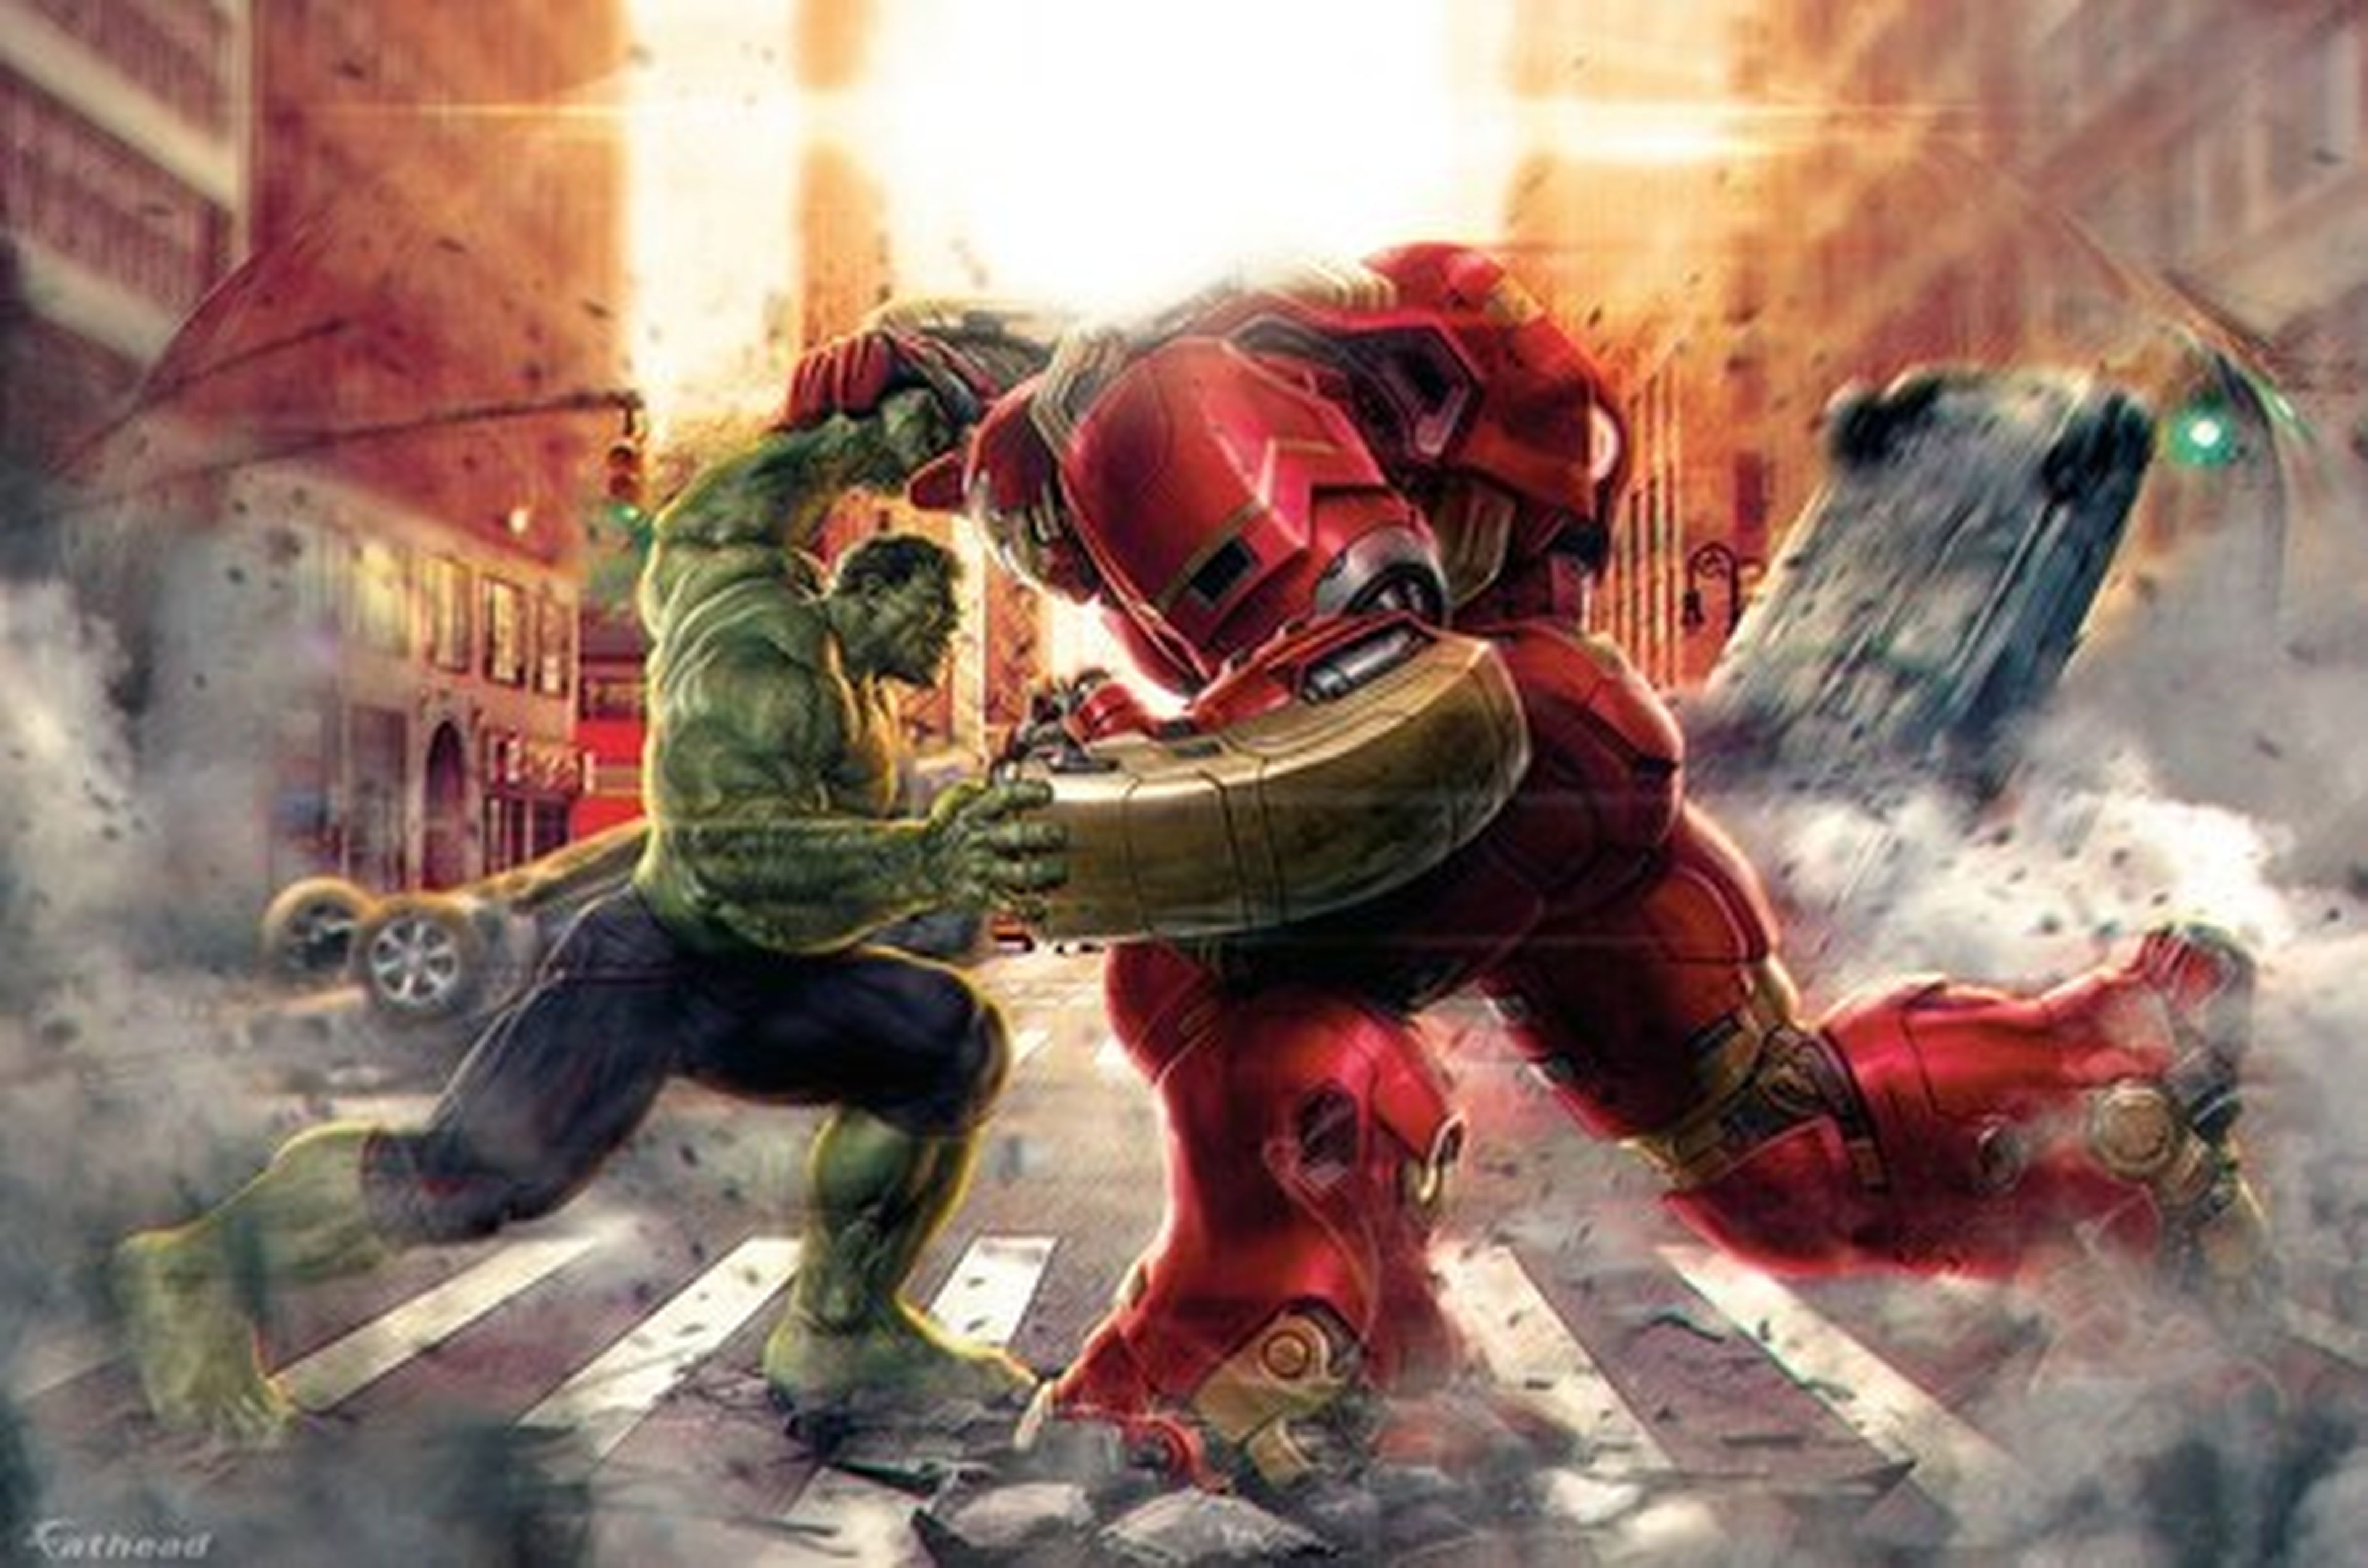 Los Vengadores: La Era de Ultron: ¿Por qué Hulk se enfrenta a Iron Man en su Hulkbuster?